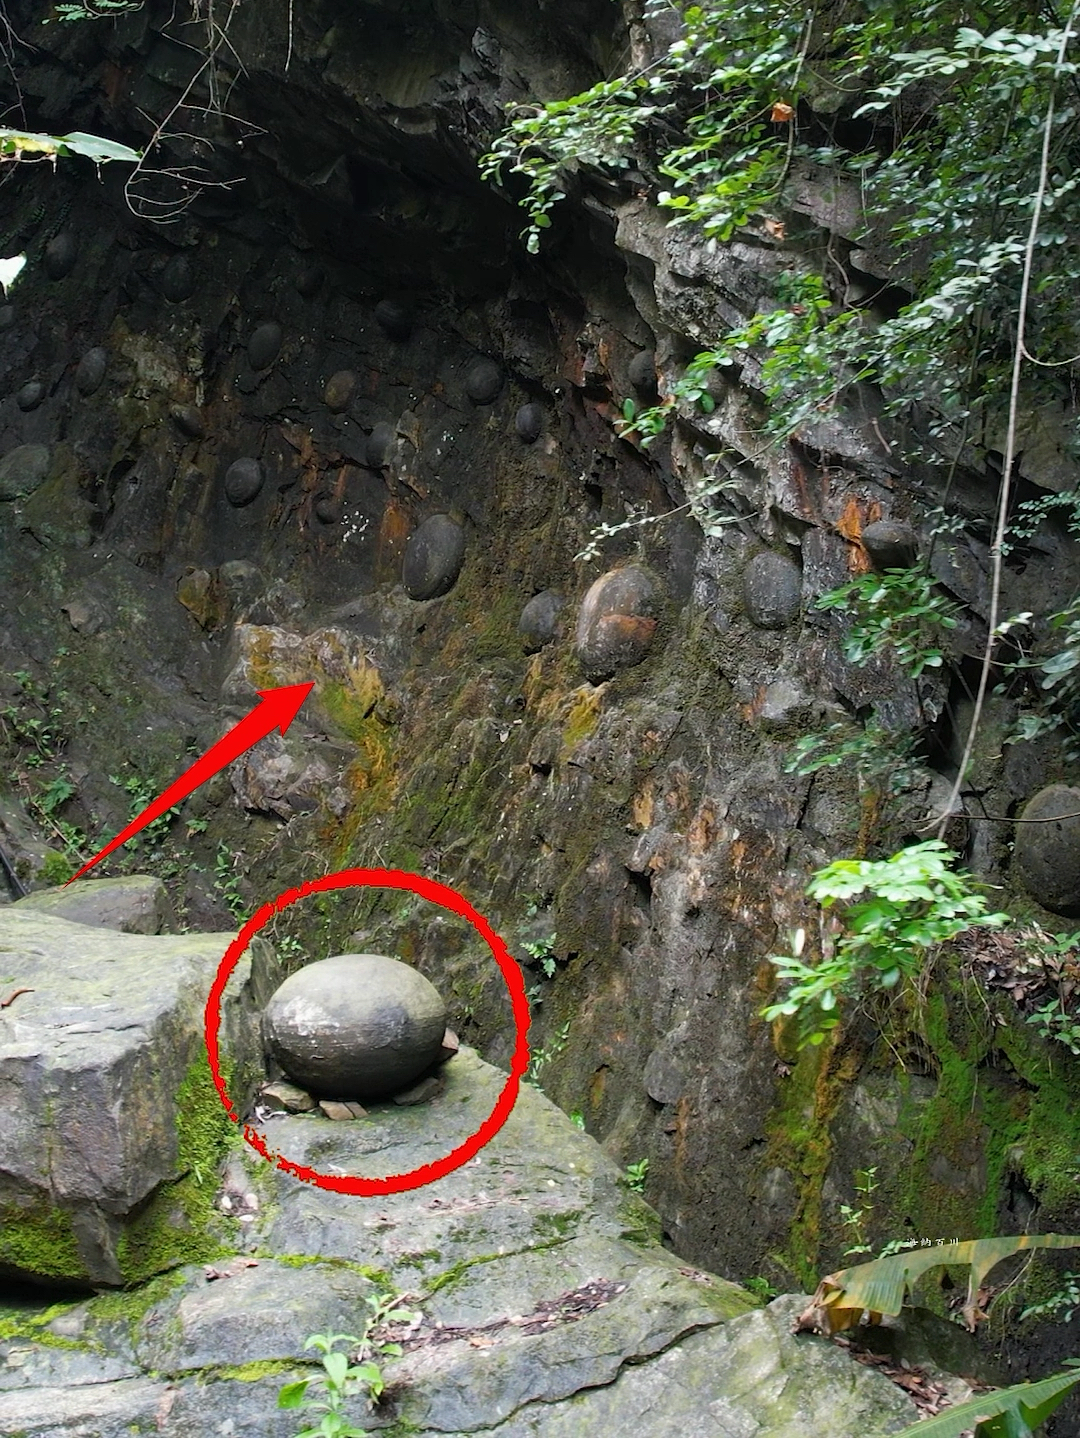 贵州深山中，发现一神秘崖壁，每隔30年就会下一颗“石头蛋”，它们到底是怎么形成的呢？ #自然奇观 #